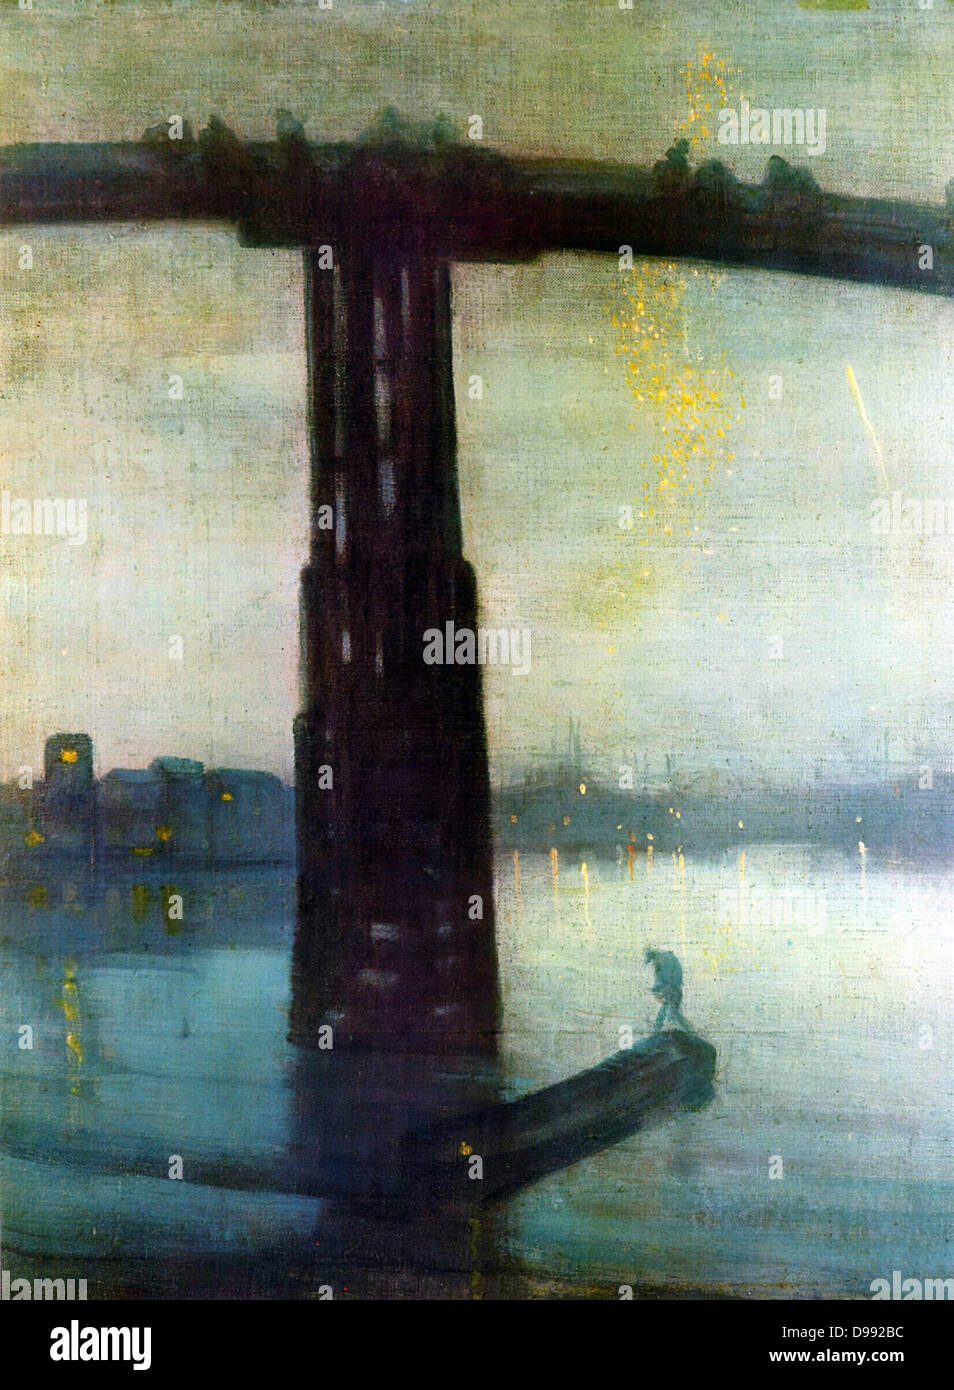 Nocturne: Blau und Gold - Alte Battersea Brücke', 1872-1875. Öl auf Leinwand. James Abbott Mcneill Whistler (1834-1903), amerikanischer Maler in Großbritannien. Nacht Wasser Reflexion Themse London England Transportbarge Stockfoto